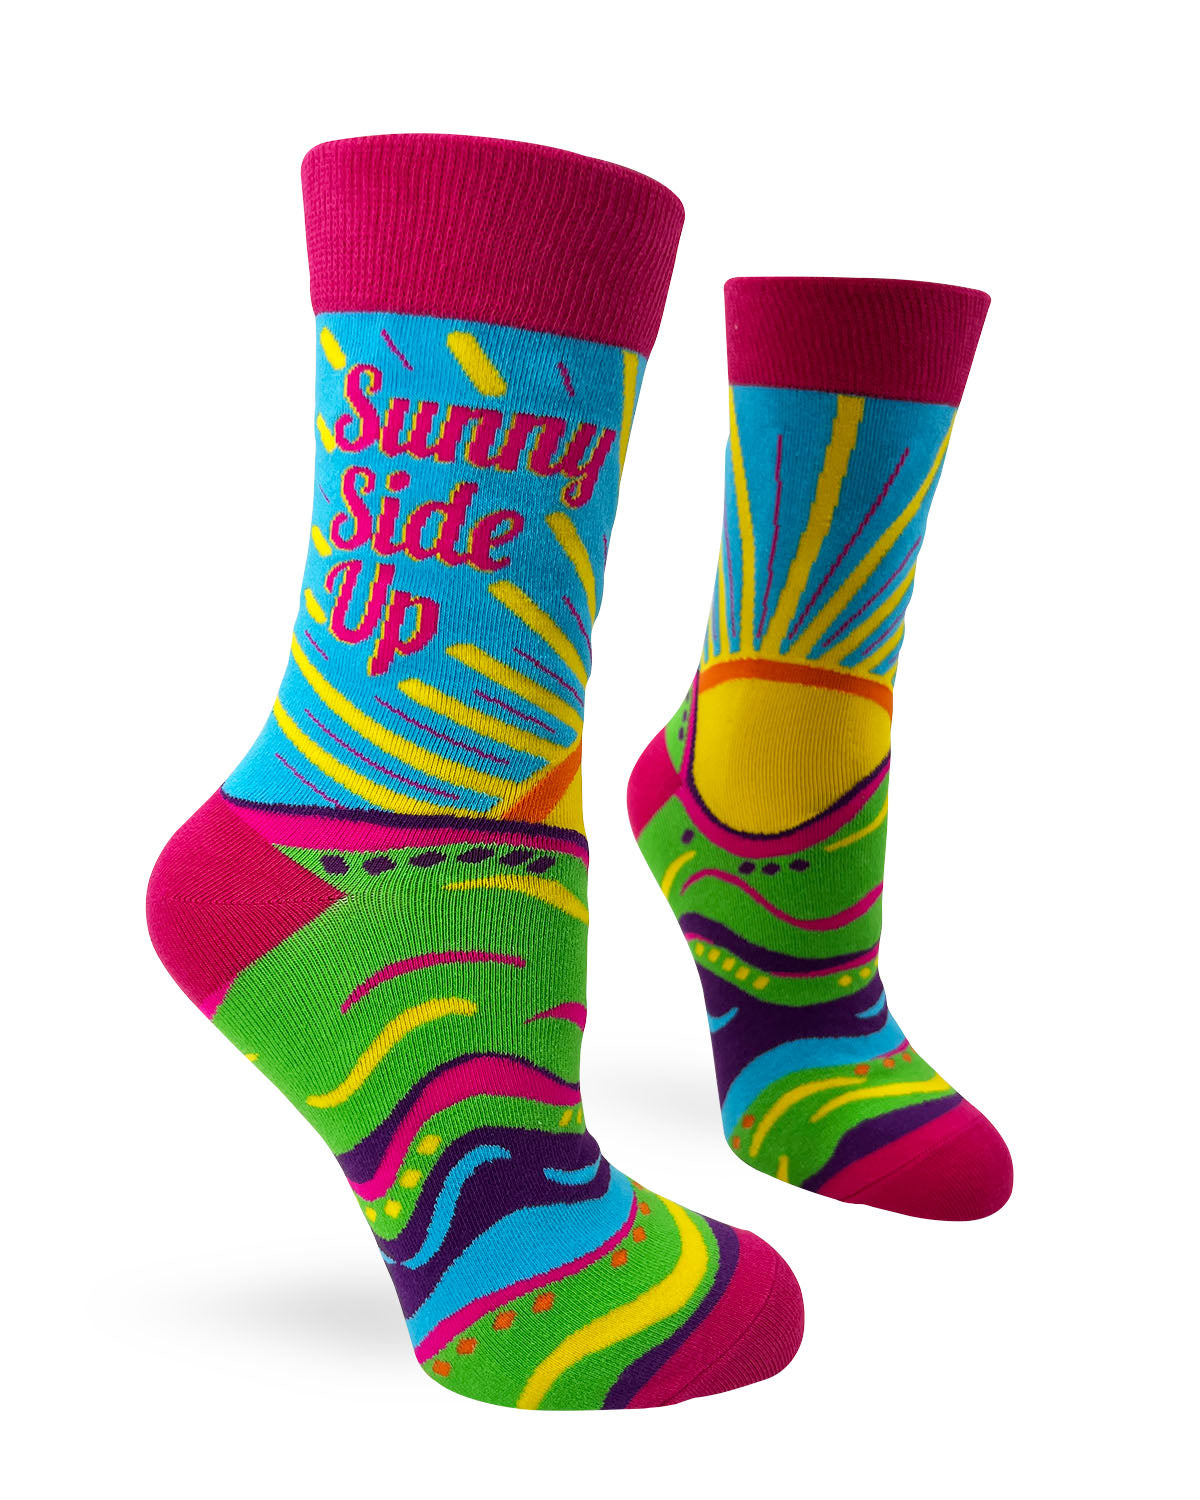 Sunny Side Up Women's Novelty Crew Socks